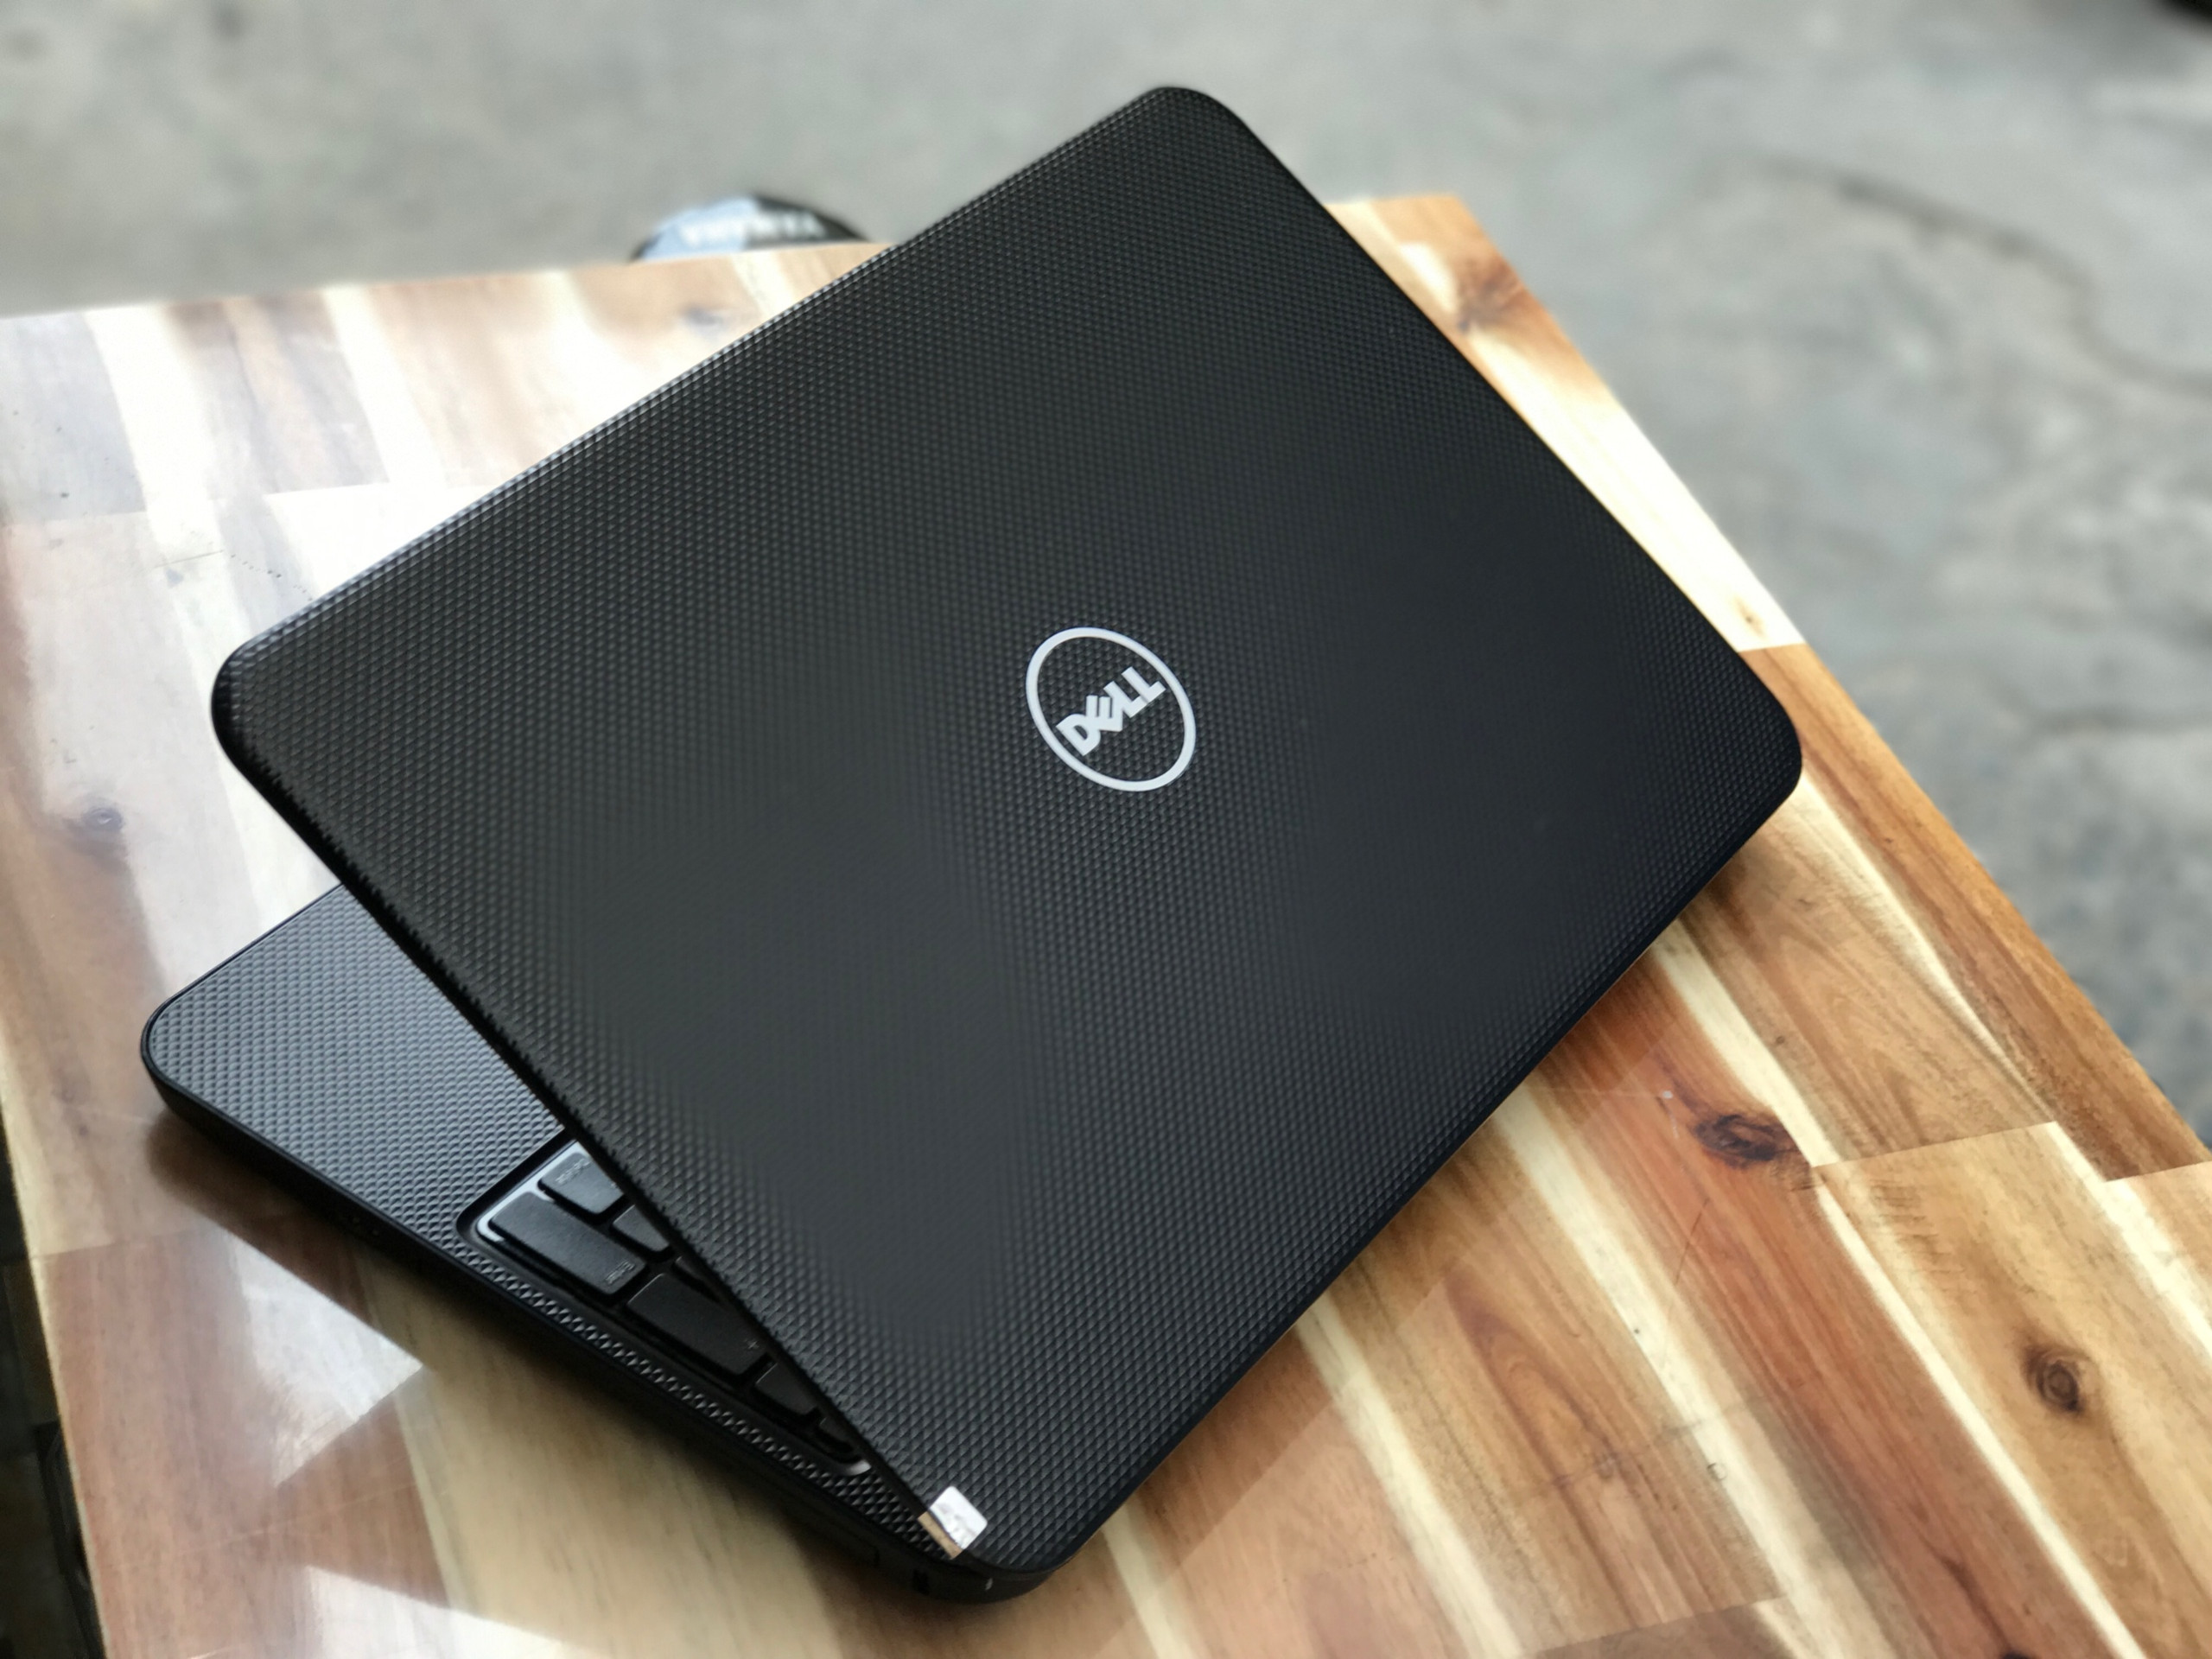 Laptop Dell Inspiron 3421, I3 3217U 4G 500G 14inch Đẹp zin 100% Giá rẻ1